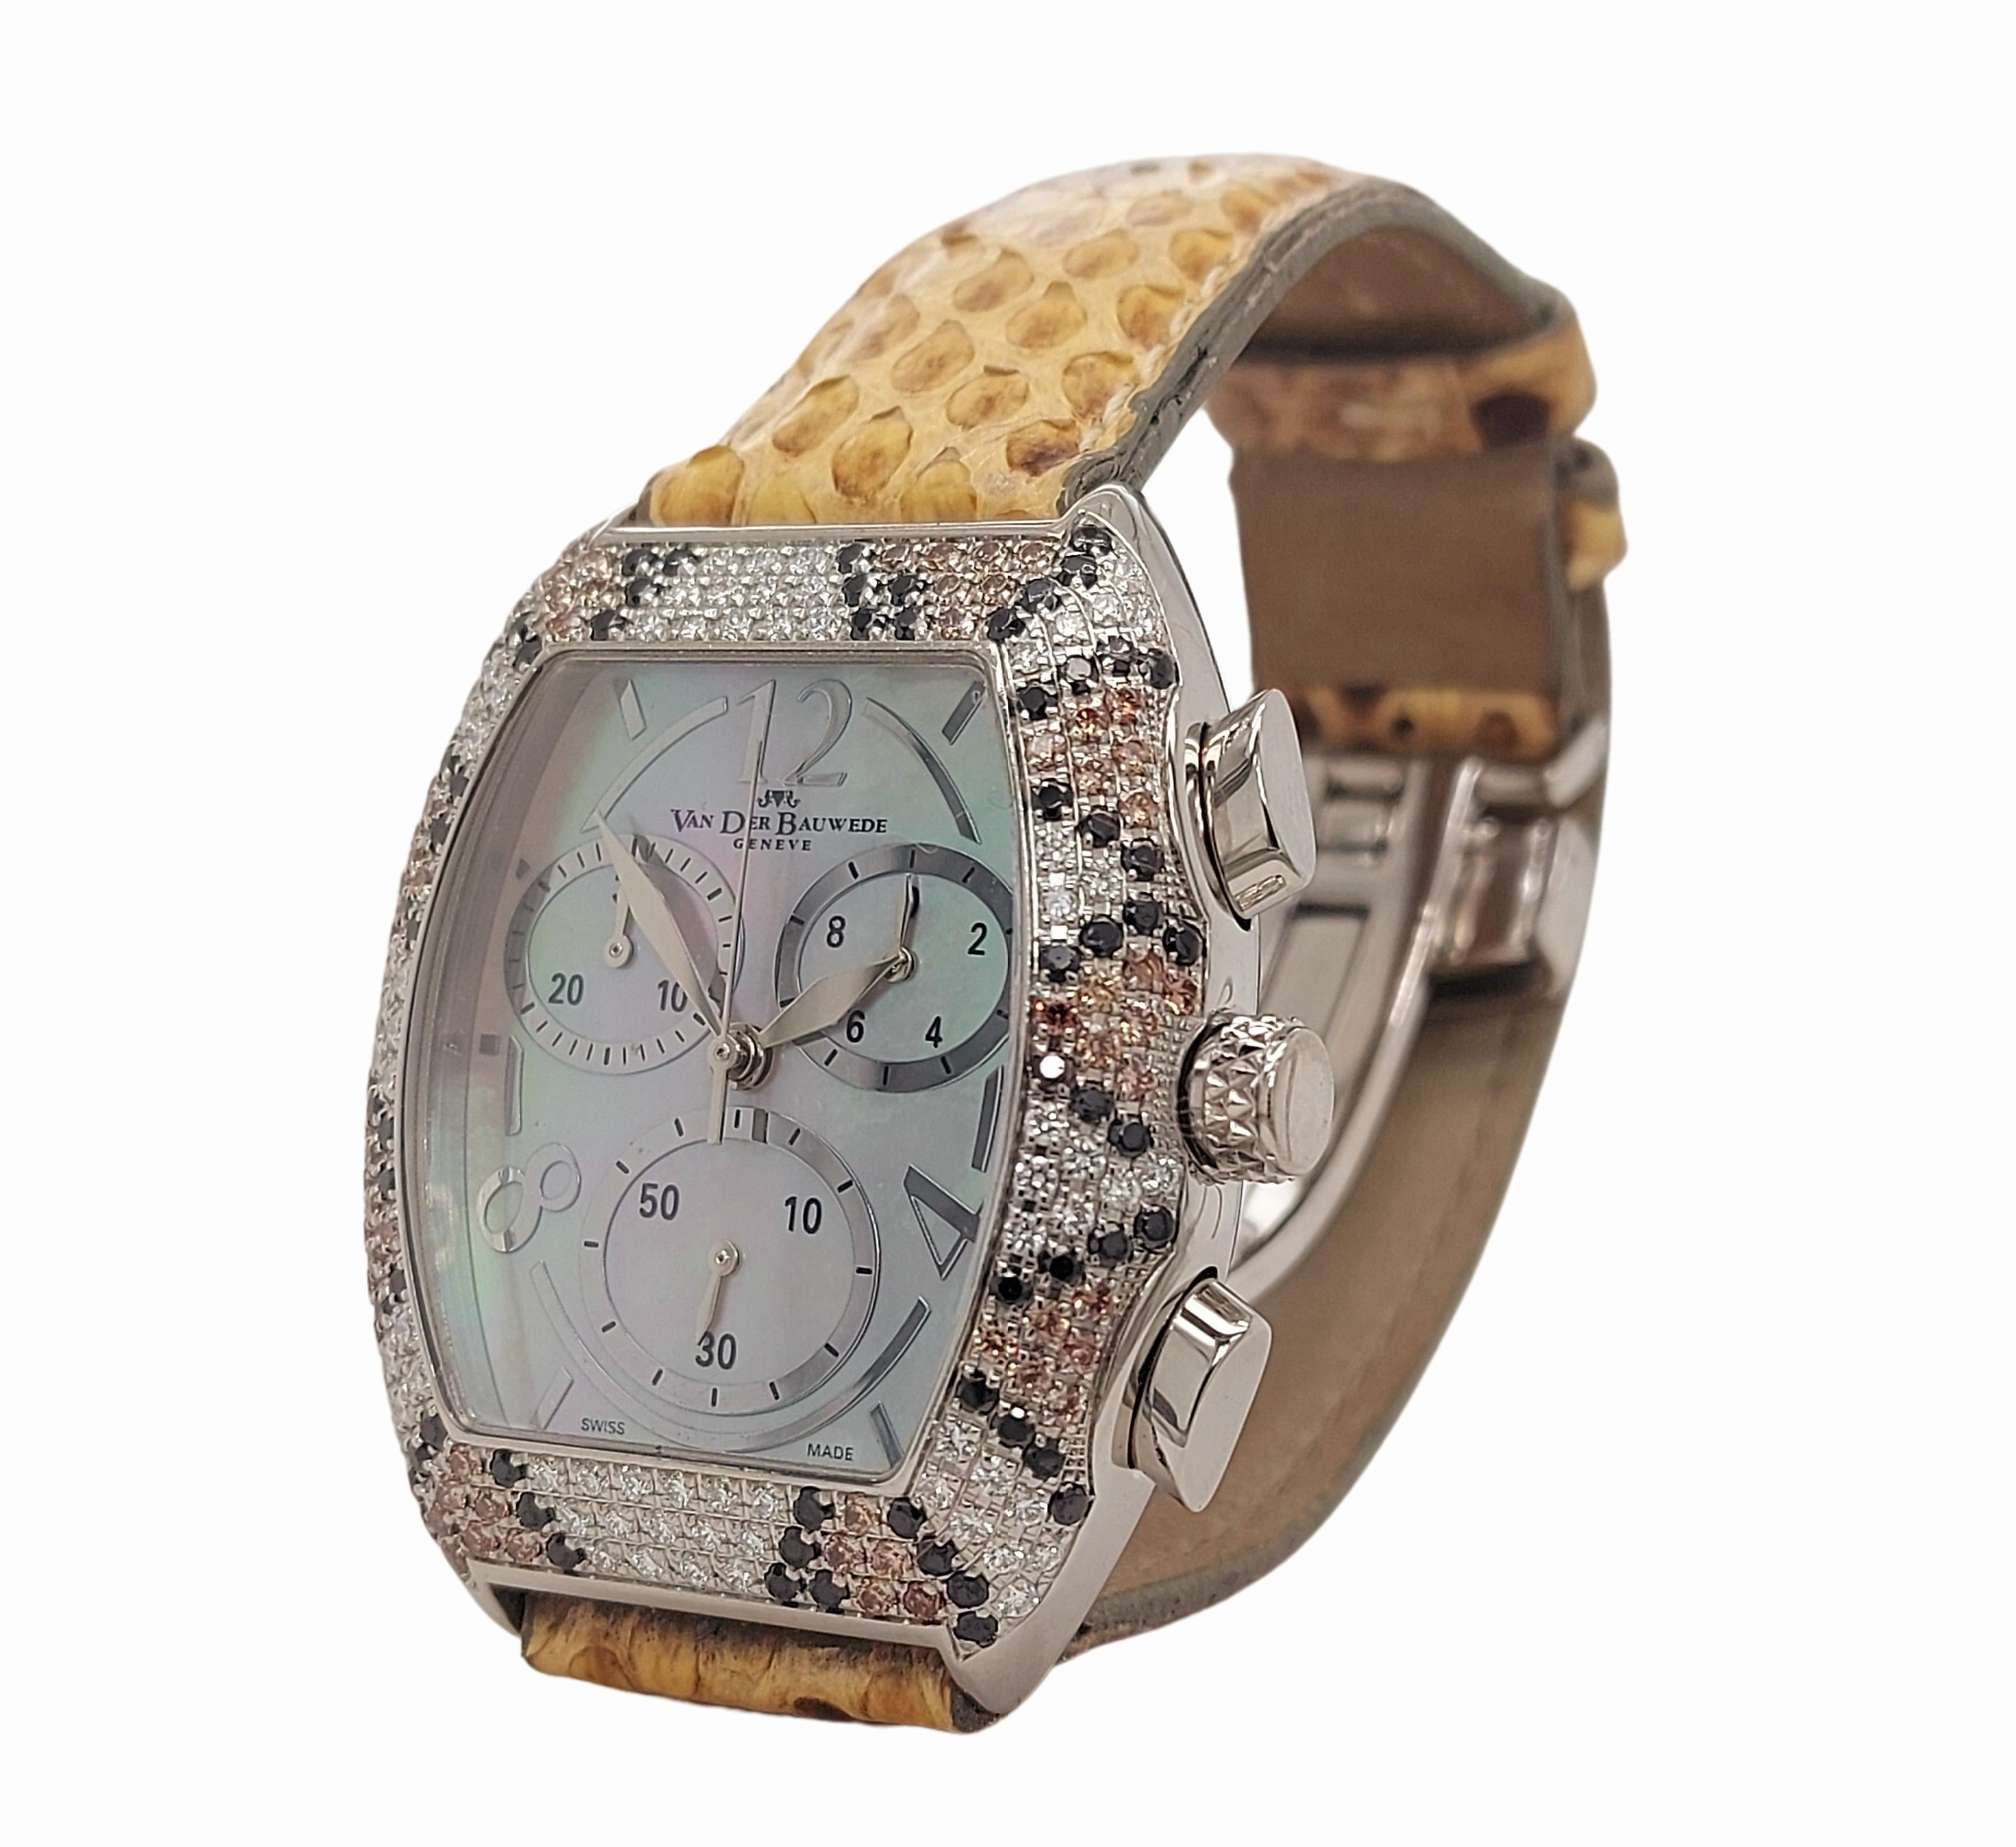 Brilliant Cut Van der Bauwede Magnum XS Chronograph Watch, Black, Cognac & White Diamonds For Sale